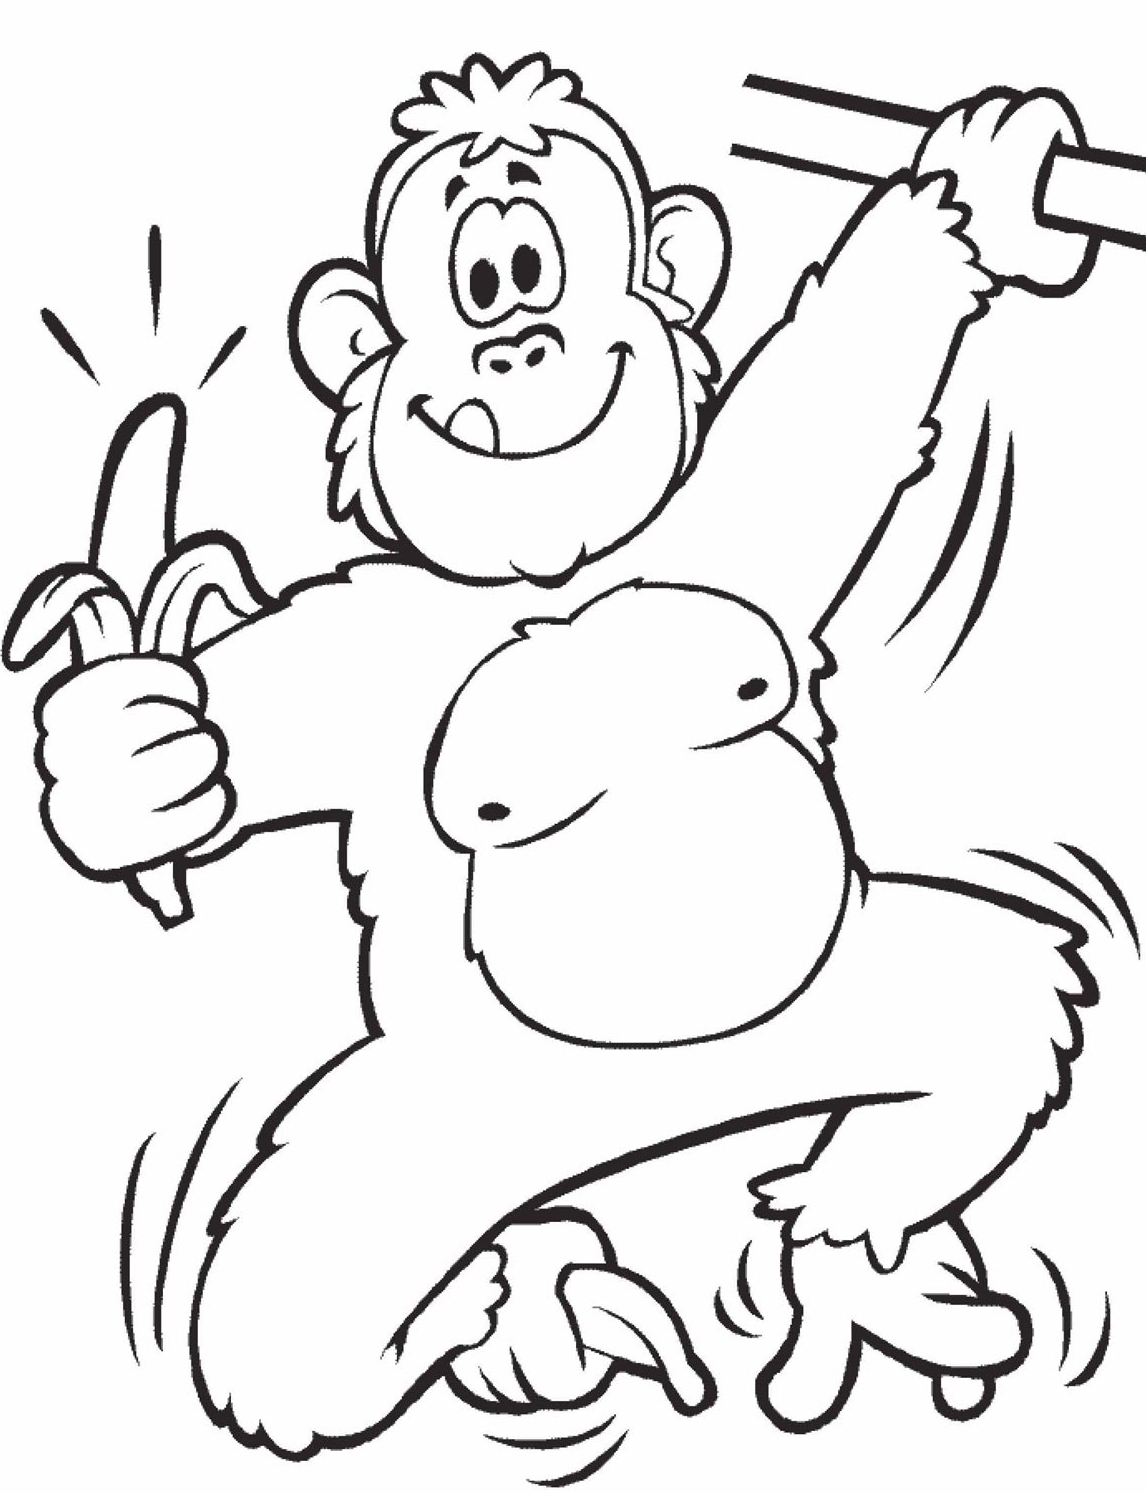 Belajar mewarnai gambar binatang monyet yang lucu untuk 